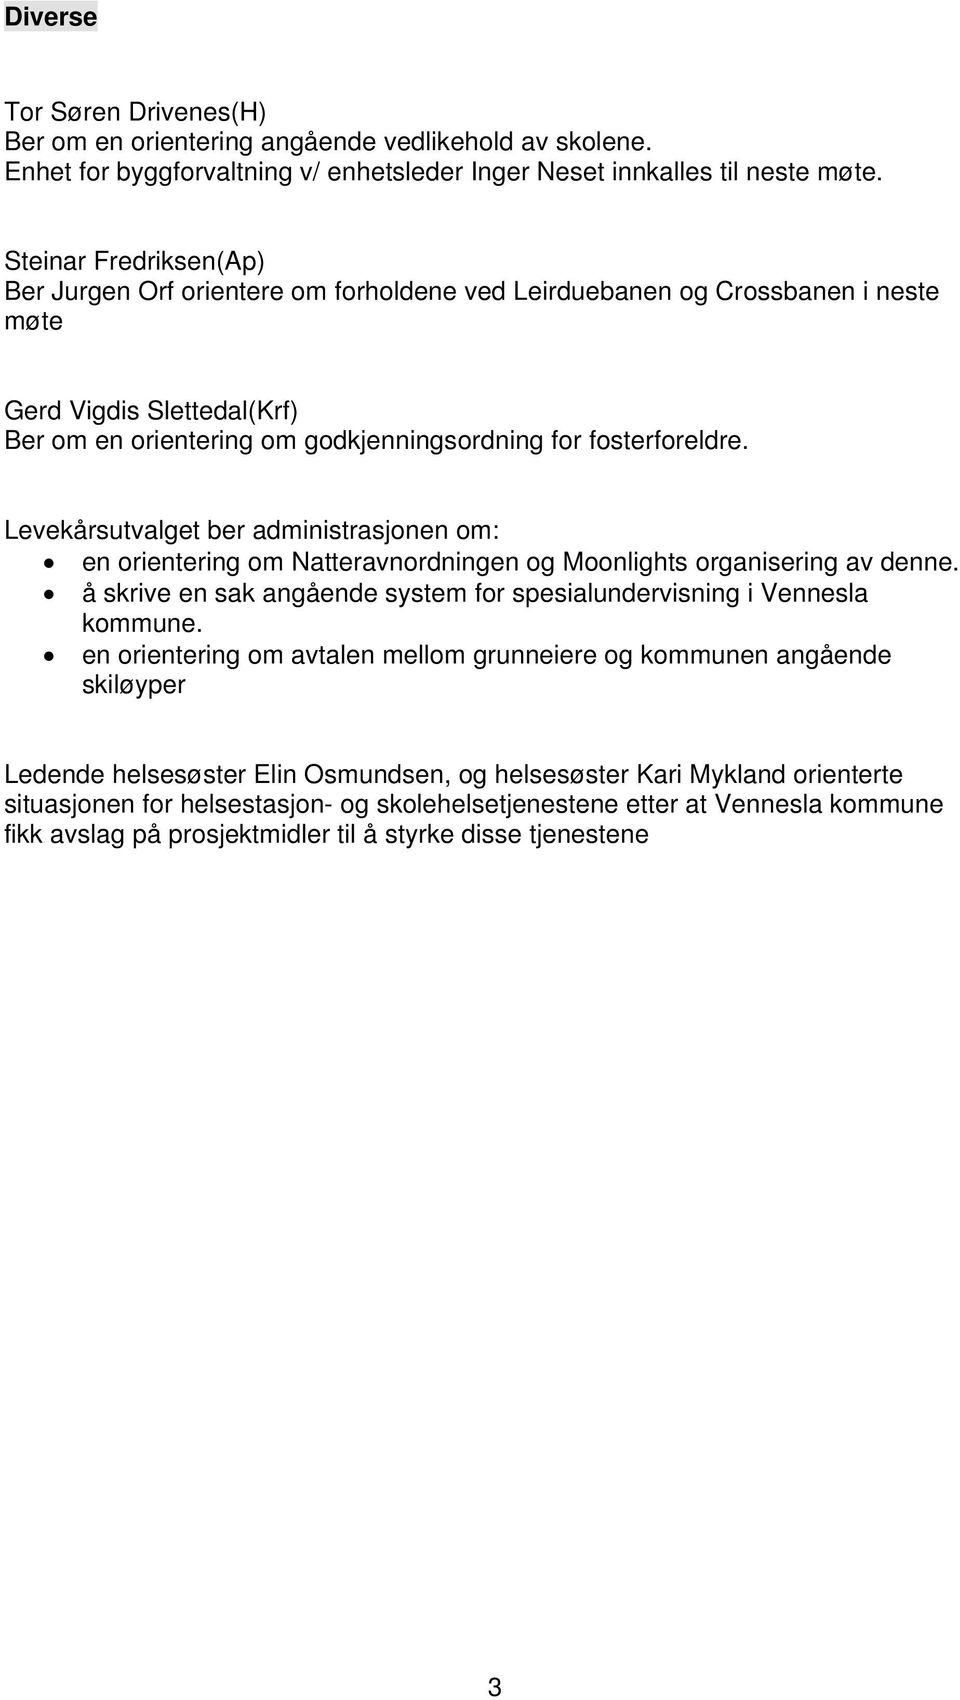 Levekårsutvalget ber administrasjonen om: en orientering om Natteravnordningen og Moonlights organisering av denne. å skrive en sak angående system for spesialundervisning i Vennesla kommune.